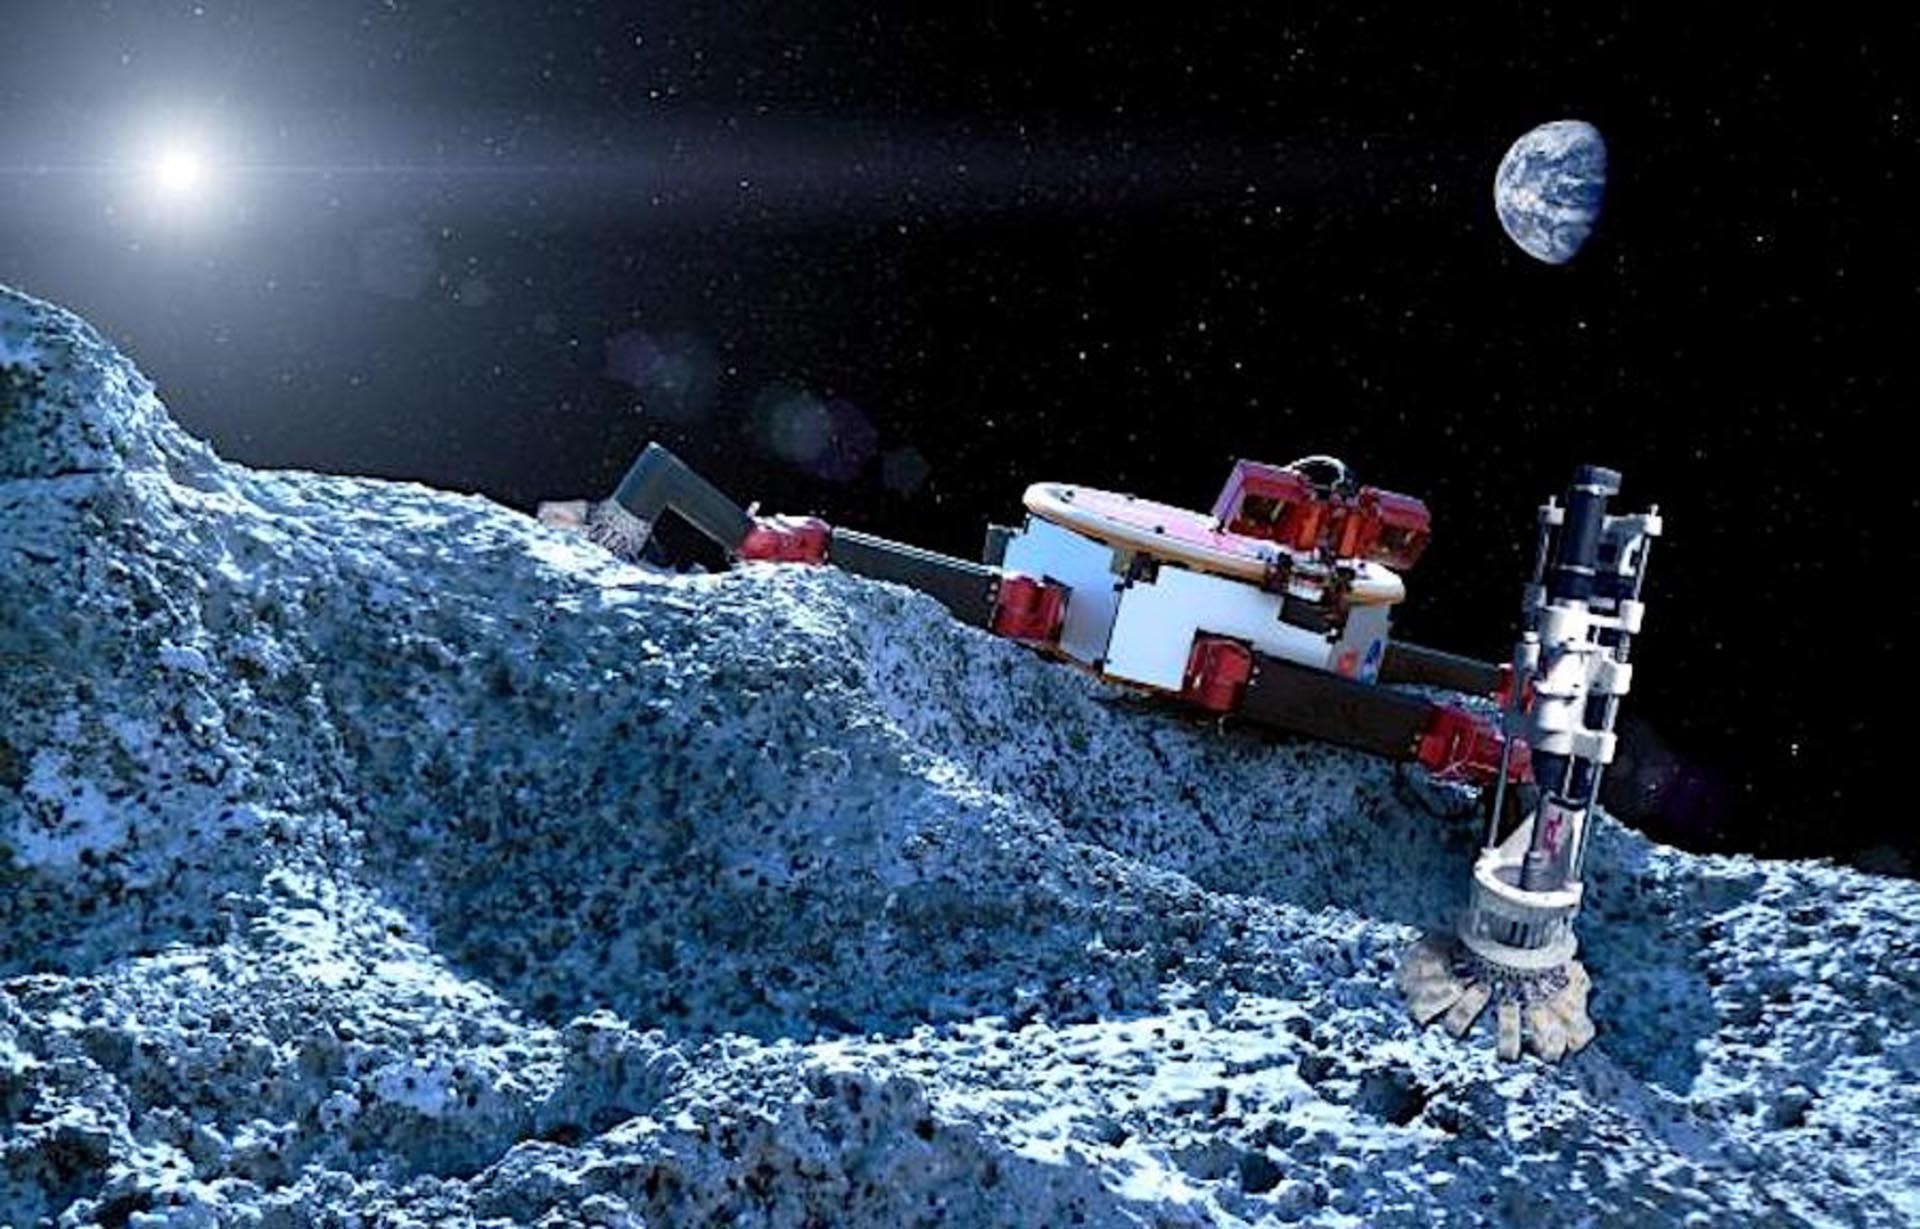 Bụi trên bề mặt Mặt trăng có thể được khai thác nhằm phục vụ lợi ích của loài người. Ảnh minh họa. (Nguồn: NASA)